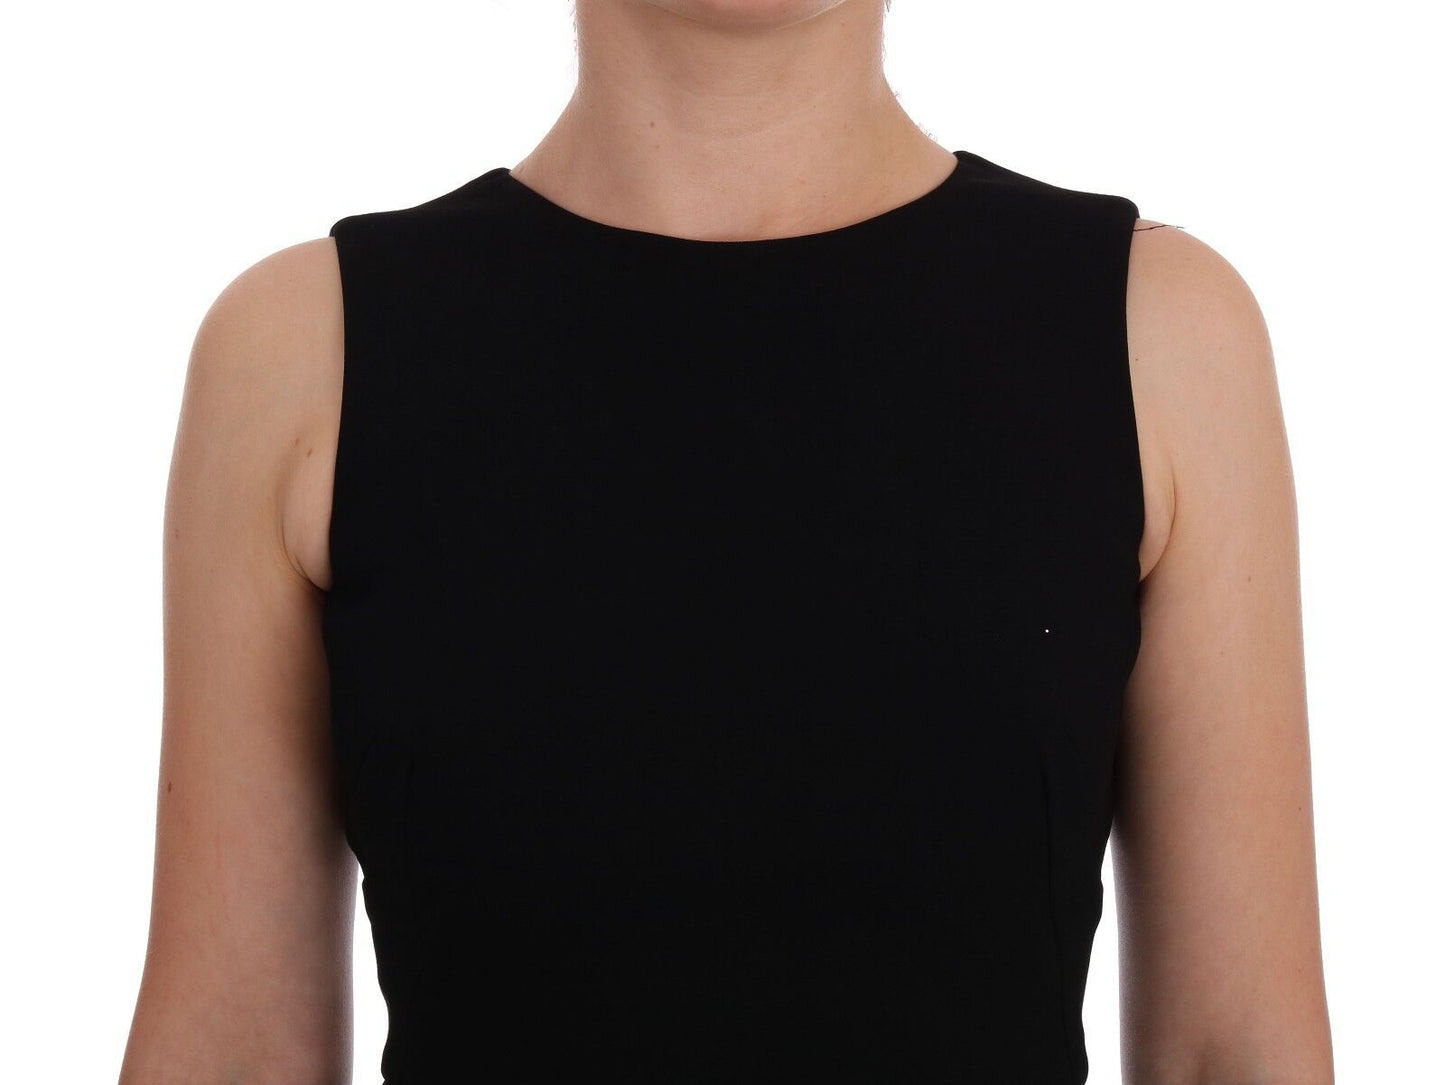 Dolce & Gabbana Black Stretch Kristallscheide Kleid Kleid